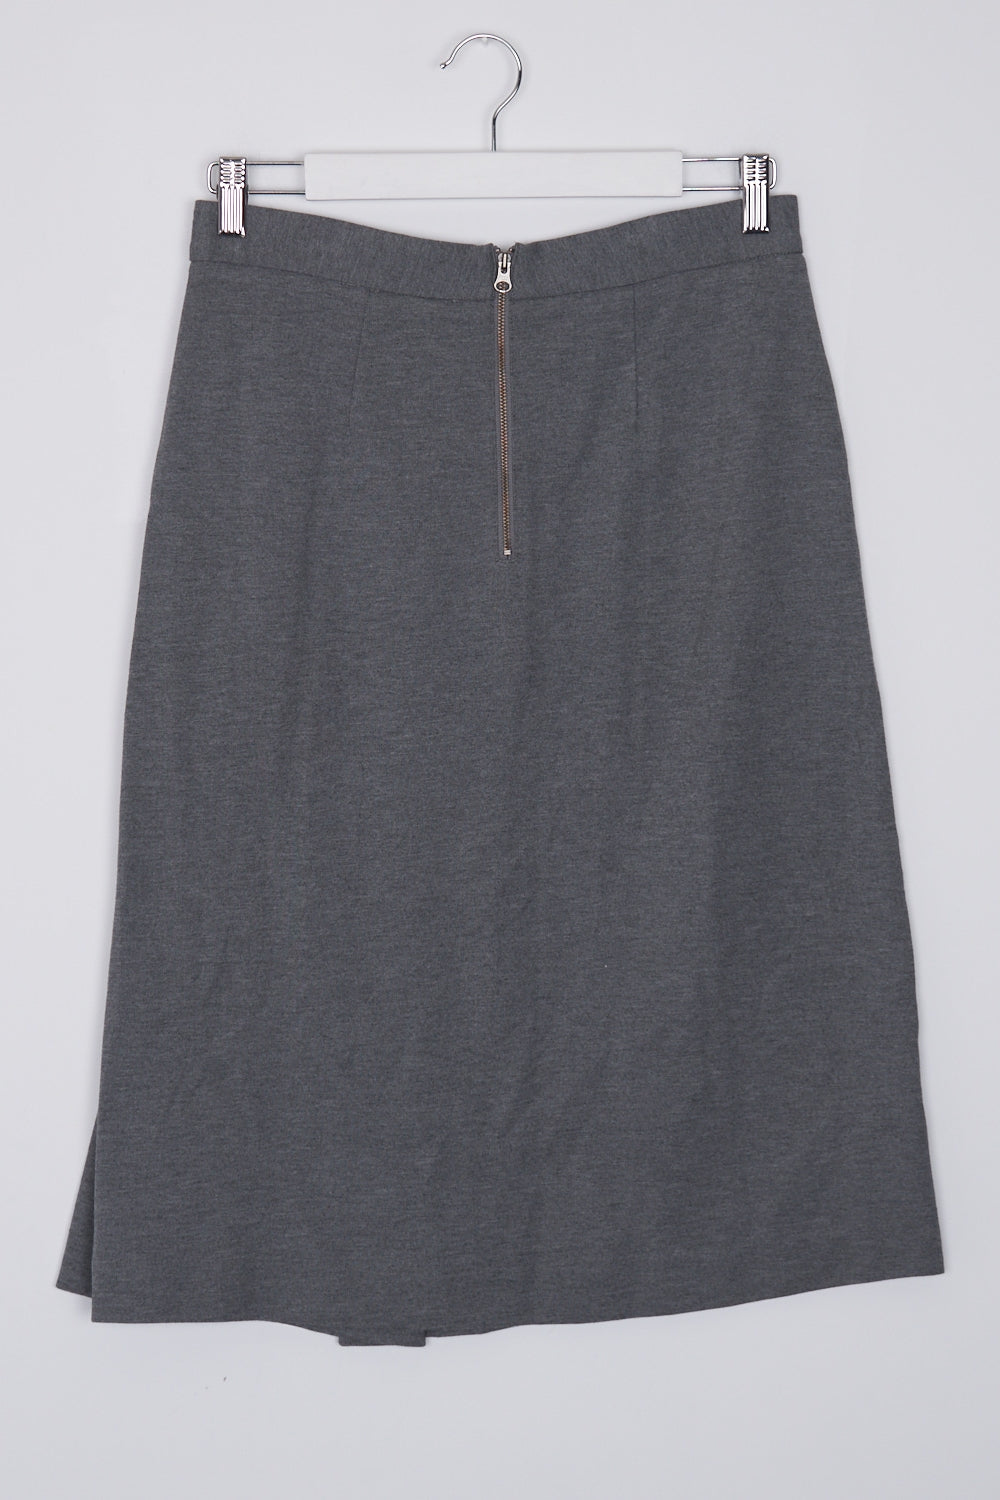 Trenery Grey Midi Skirt XS